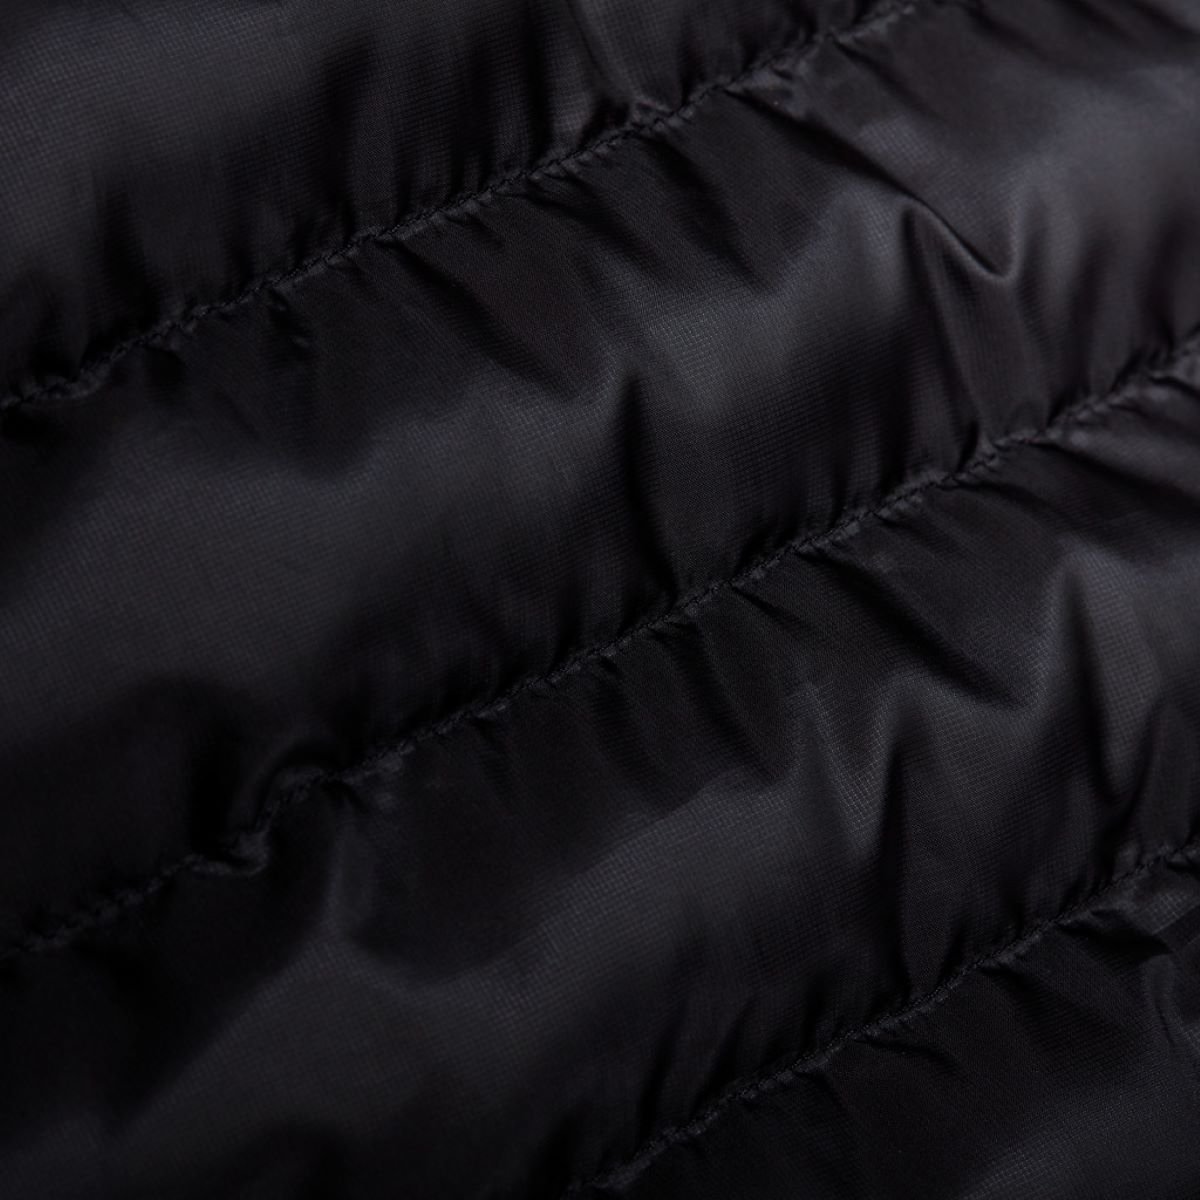 Bunda Mammut Albula IN Hybrid Jacket M - černá